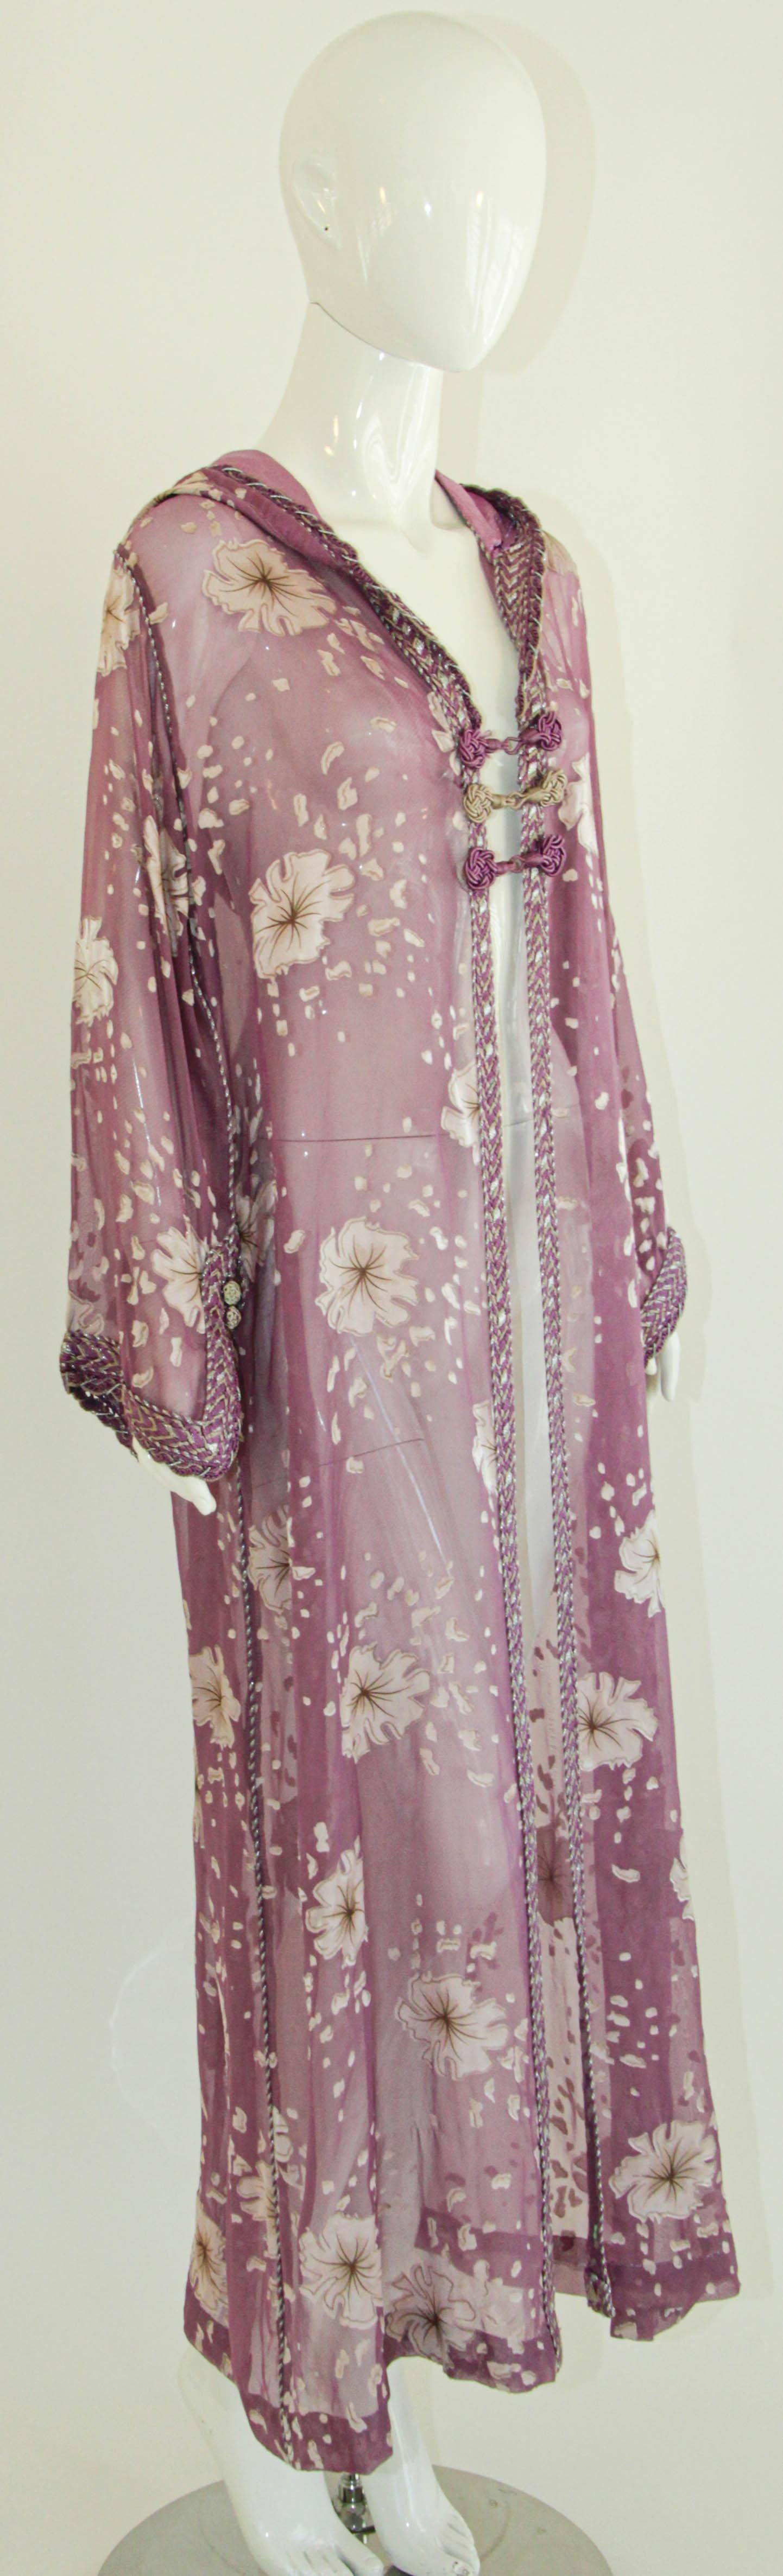 Moroccan Lavender Kaftan Maxi Dress Hooded Vintage Caftan For Sale 4